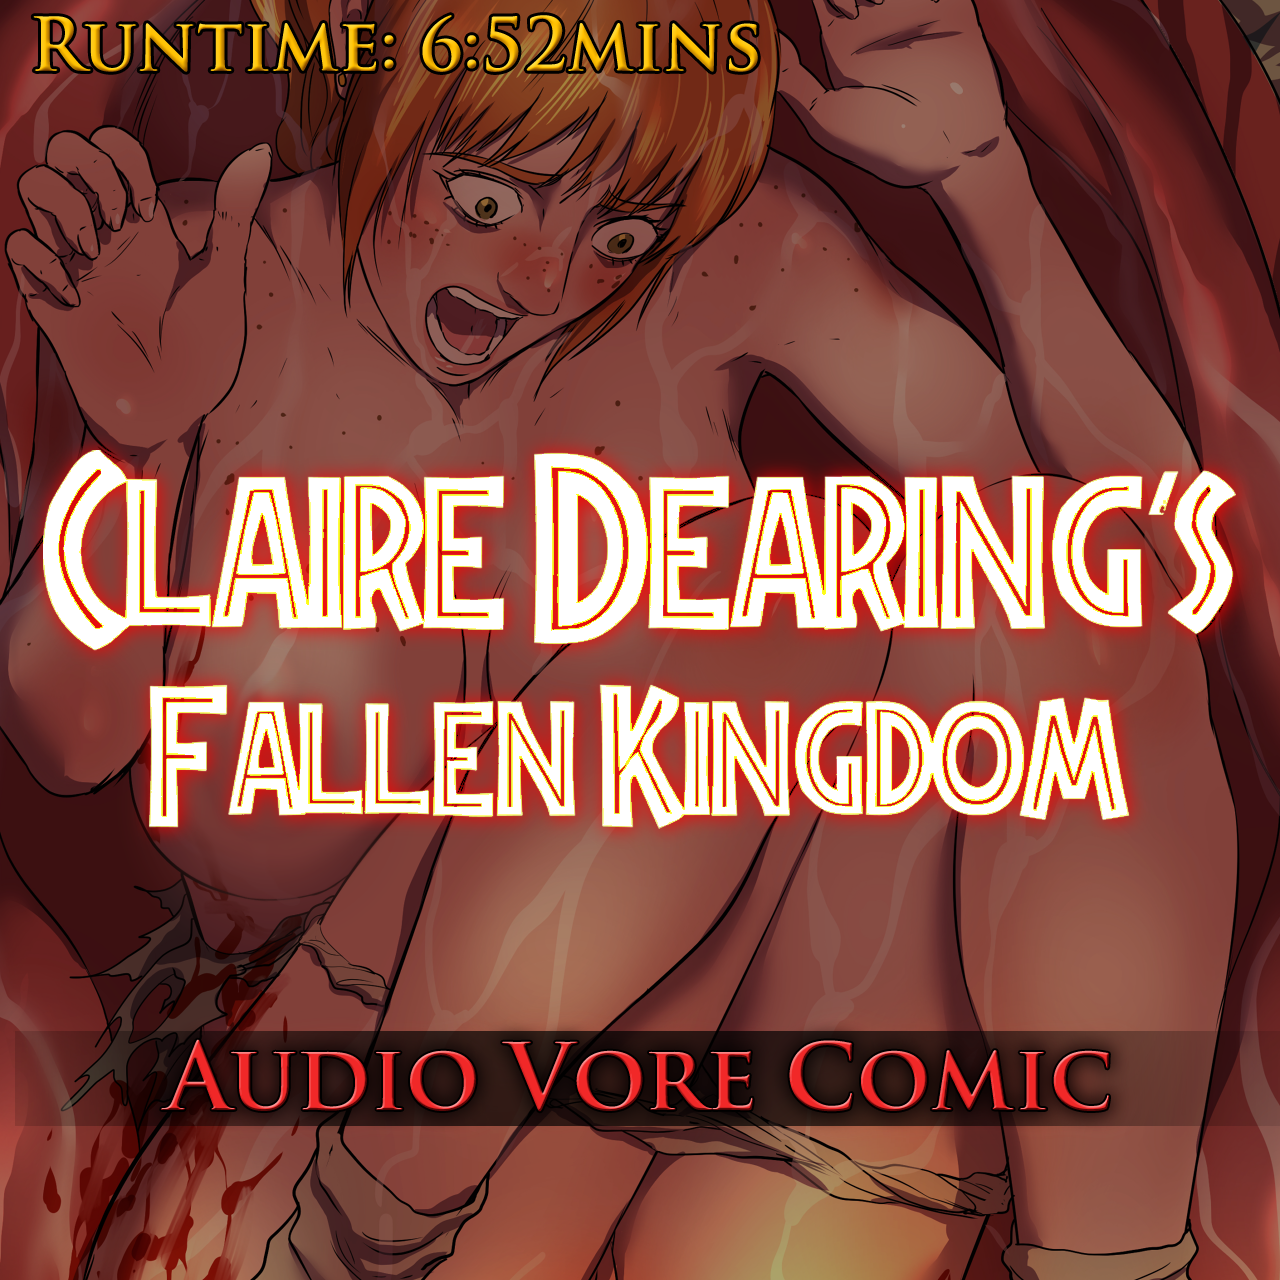 Claire Dearing's Fallen Kingdom - Audio Vore Comic